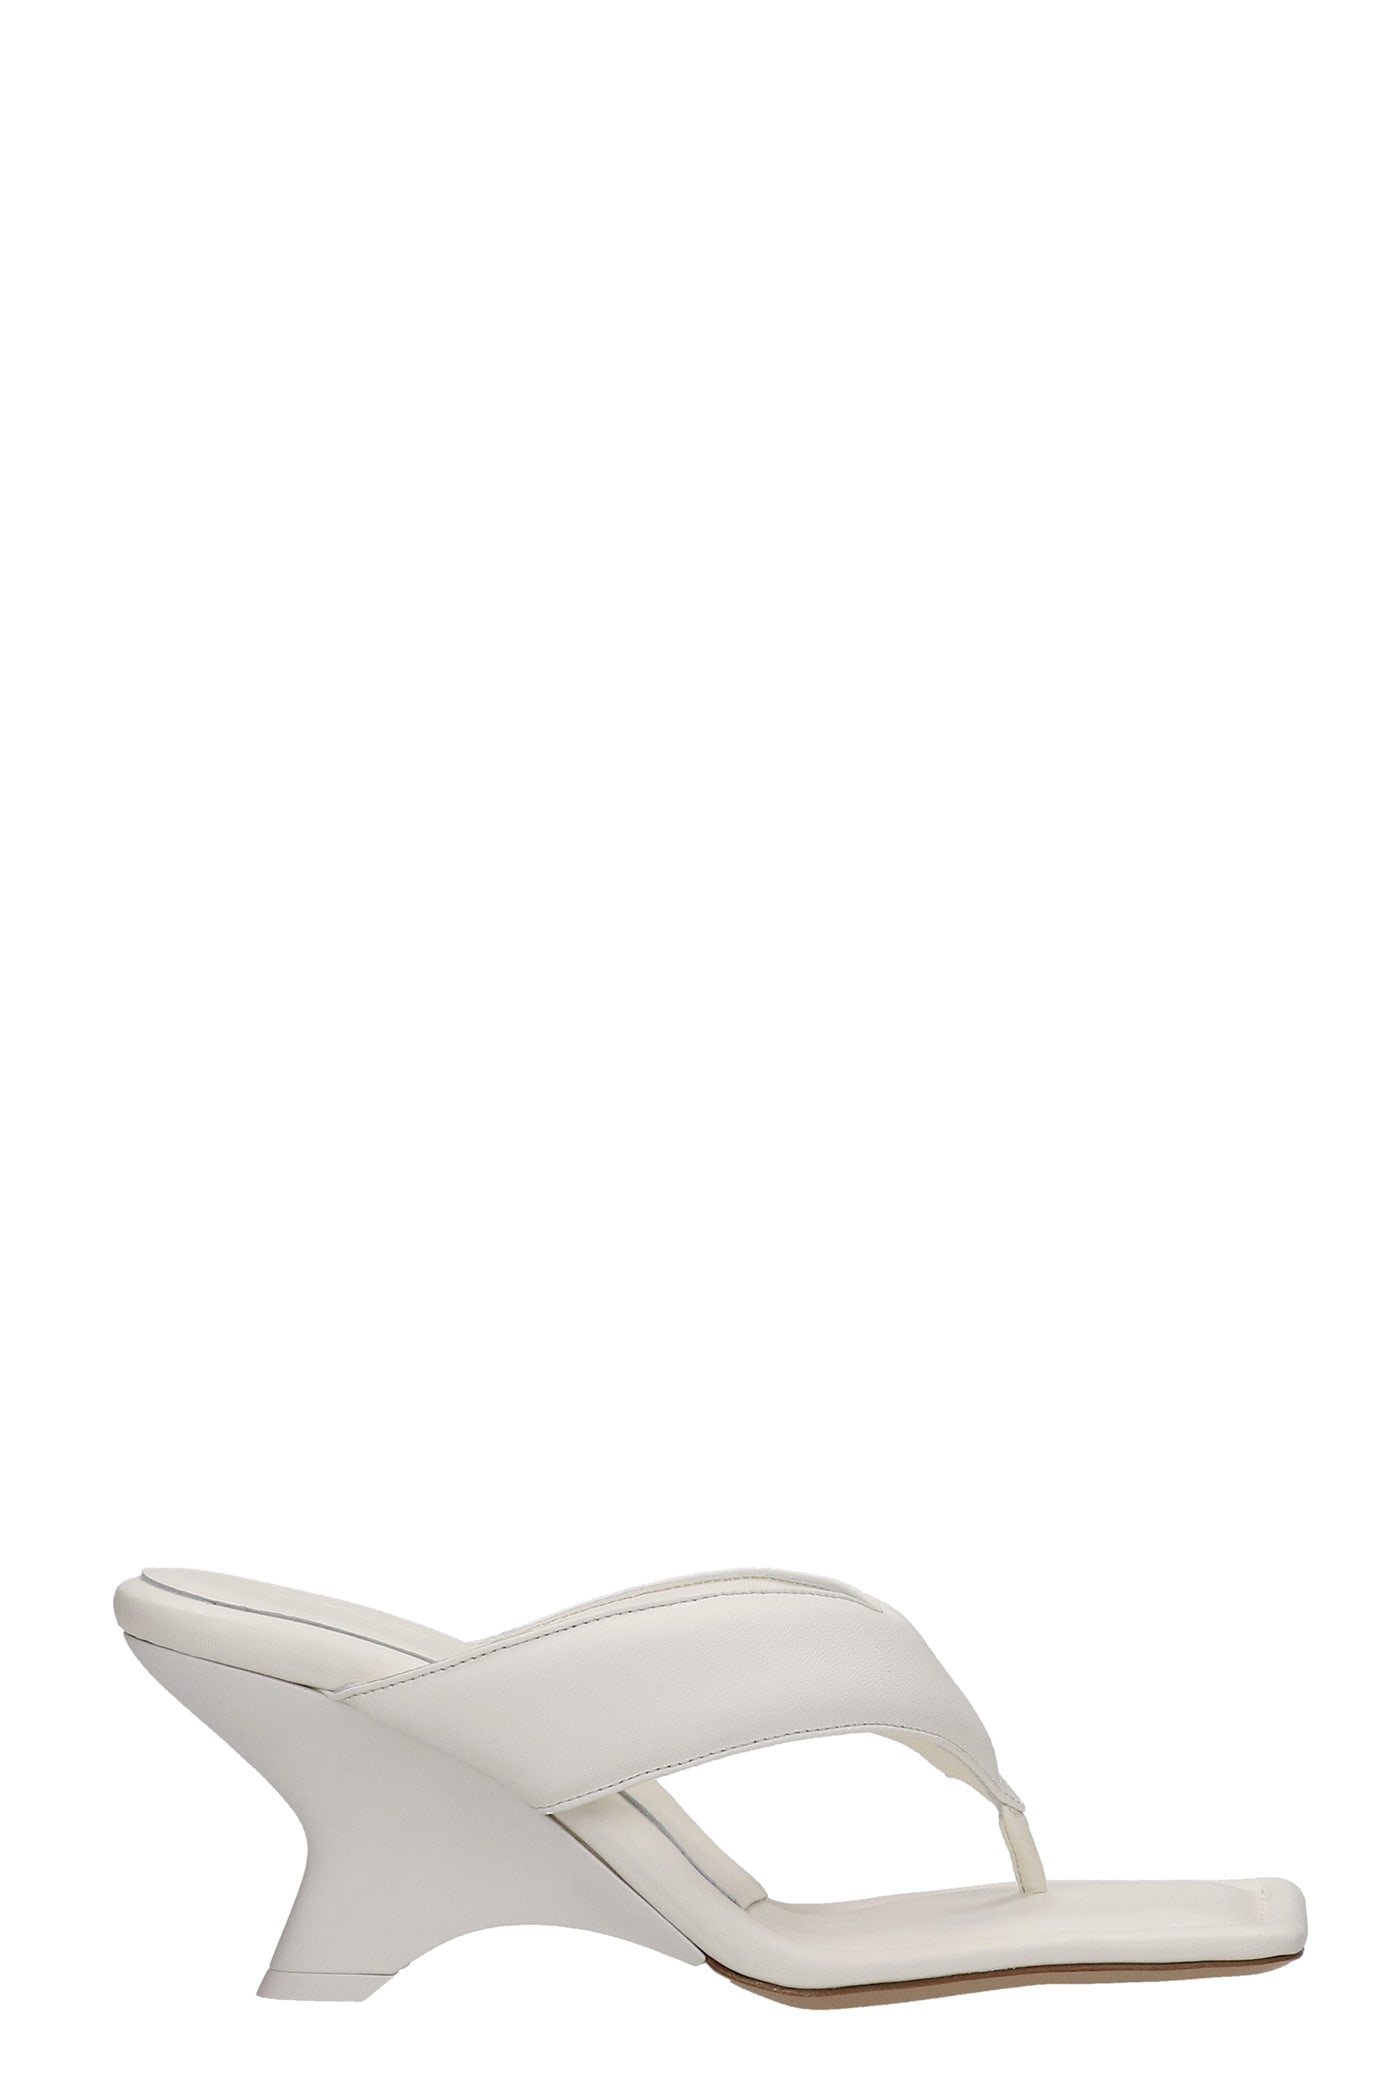 GIA BORGHINI Gia 6 Sandals In White Leather